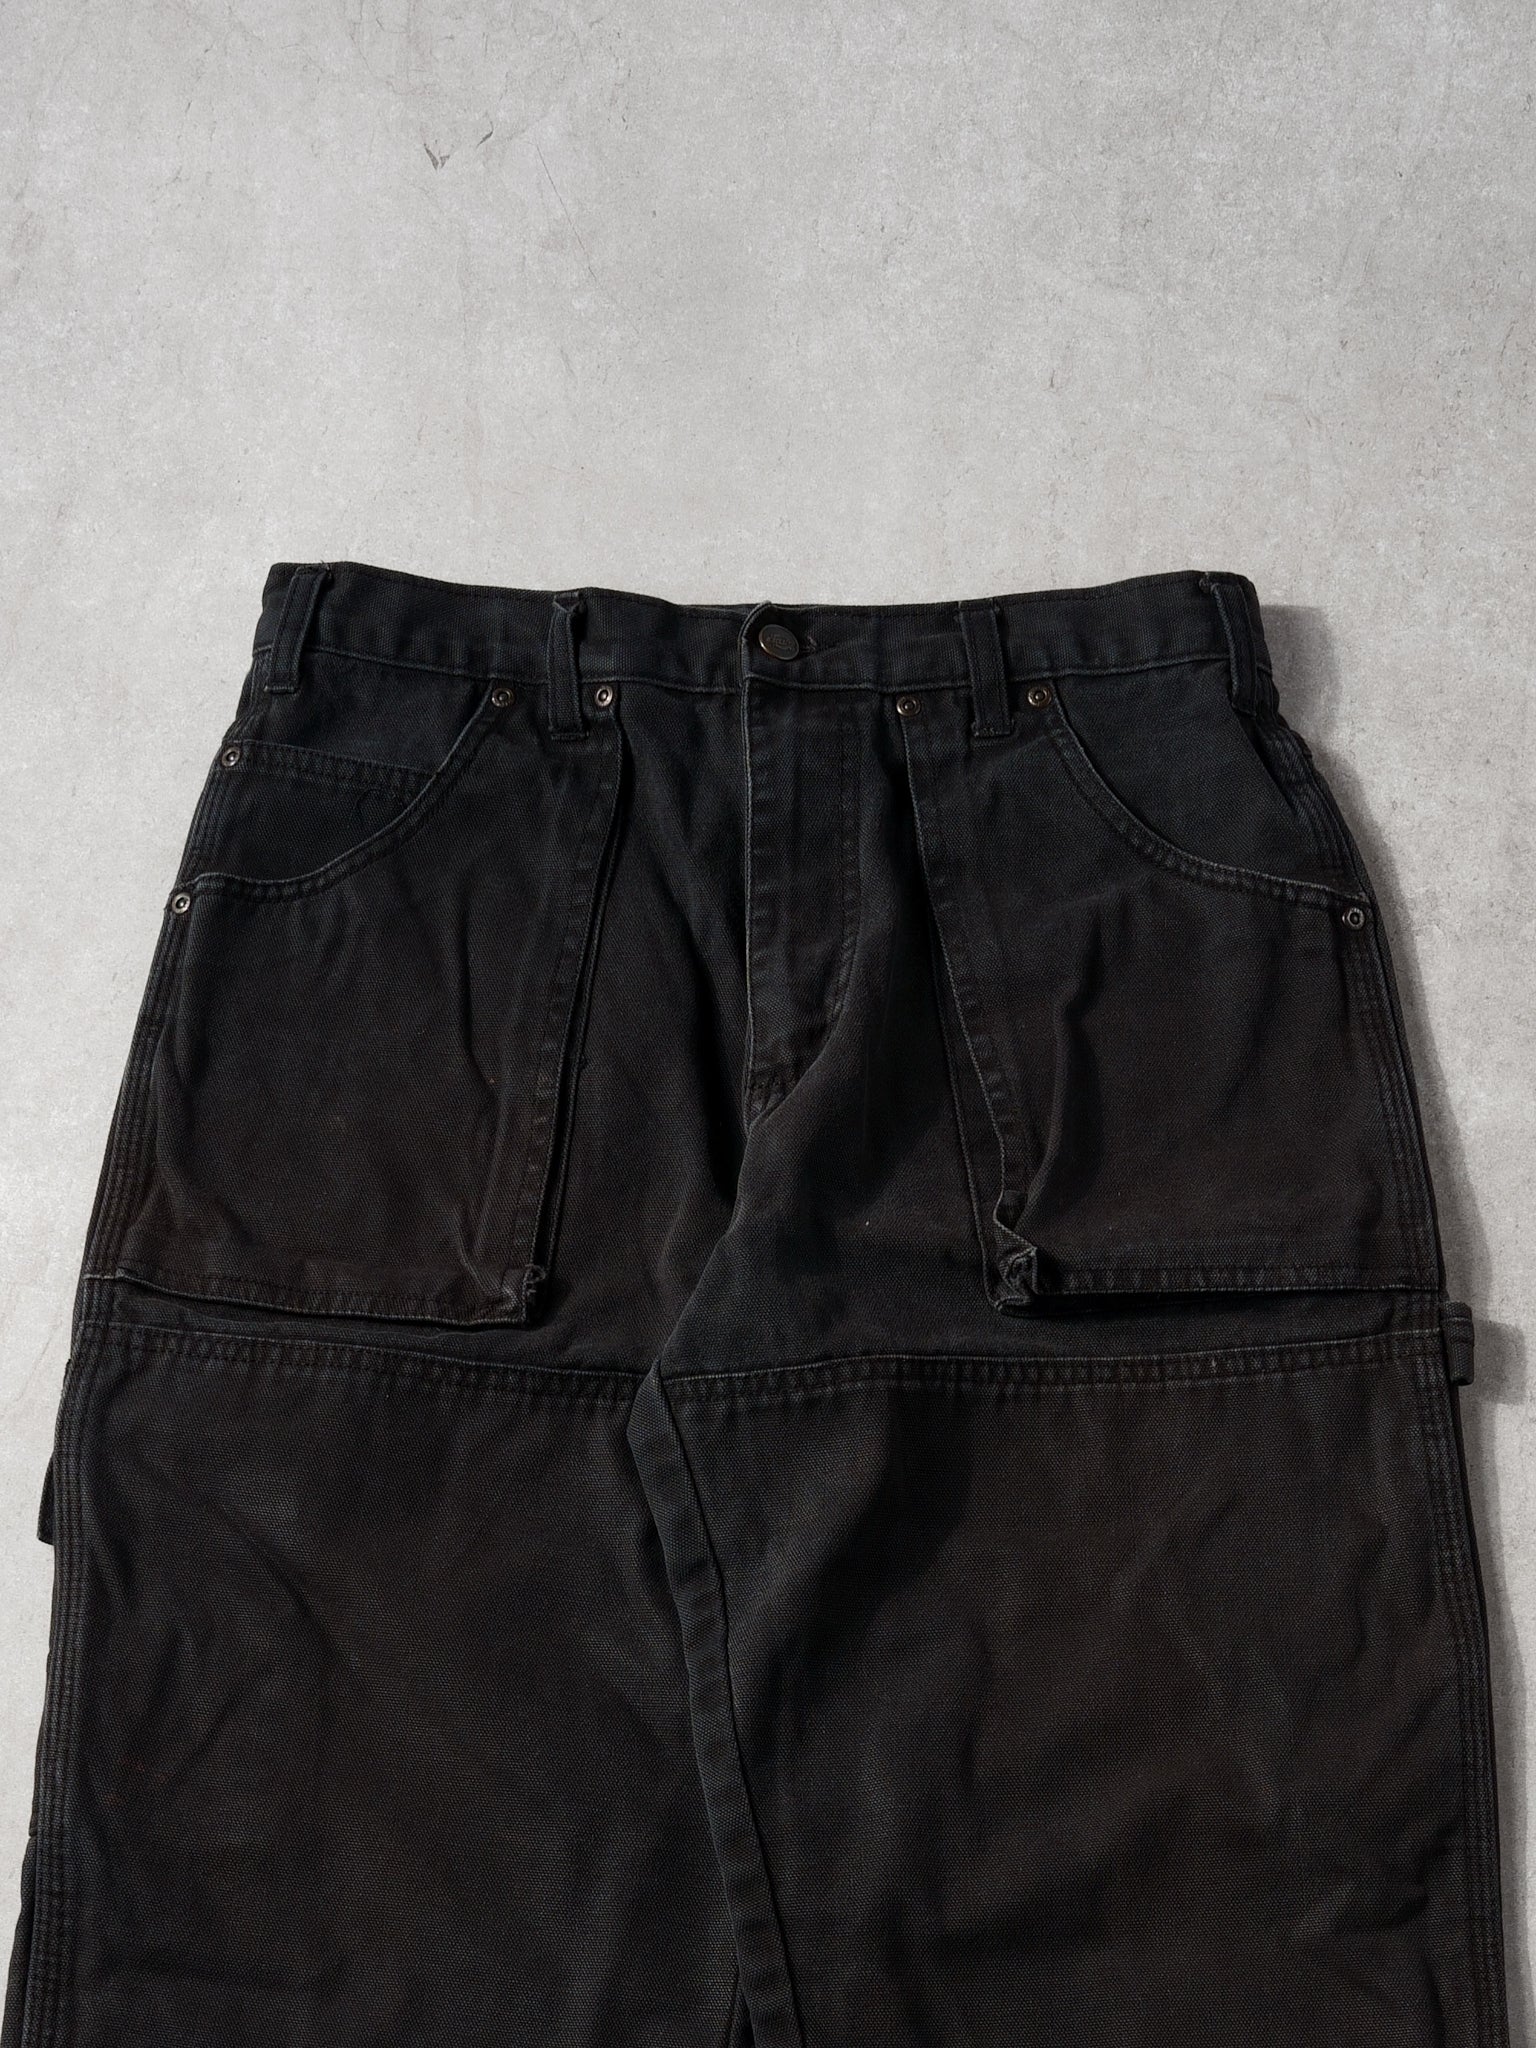 Vintage Black Dickies Double Knee Carpenter Pants (30x32)